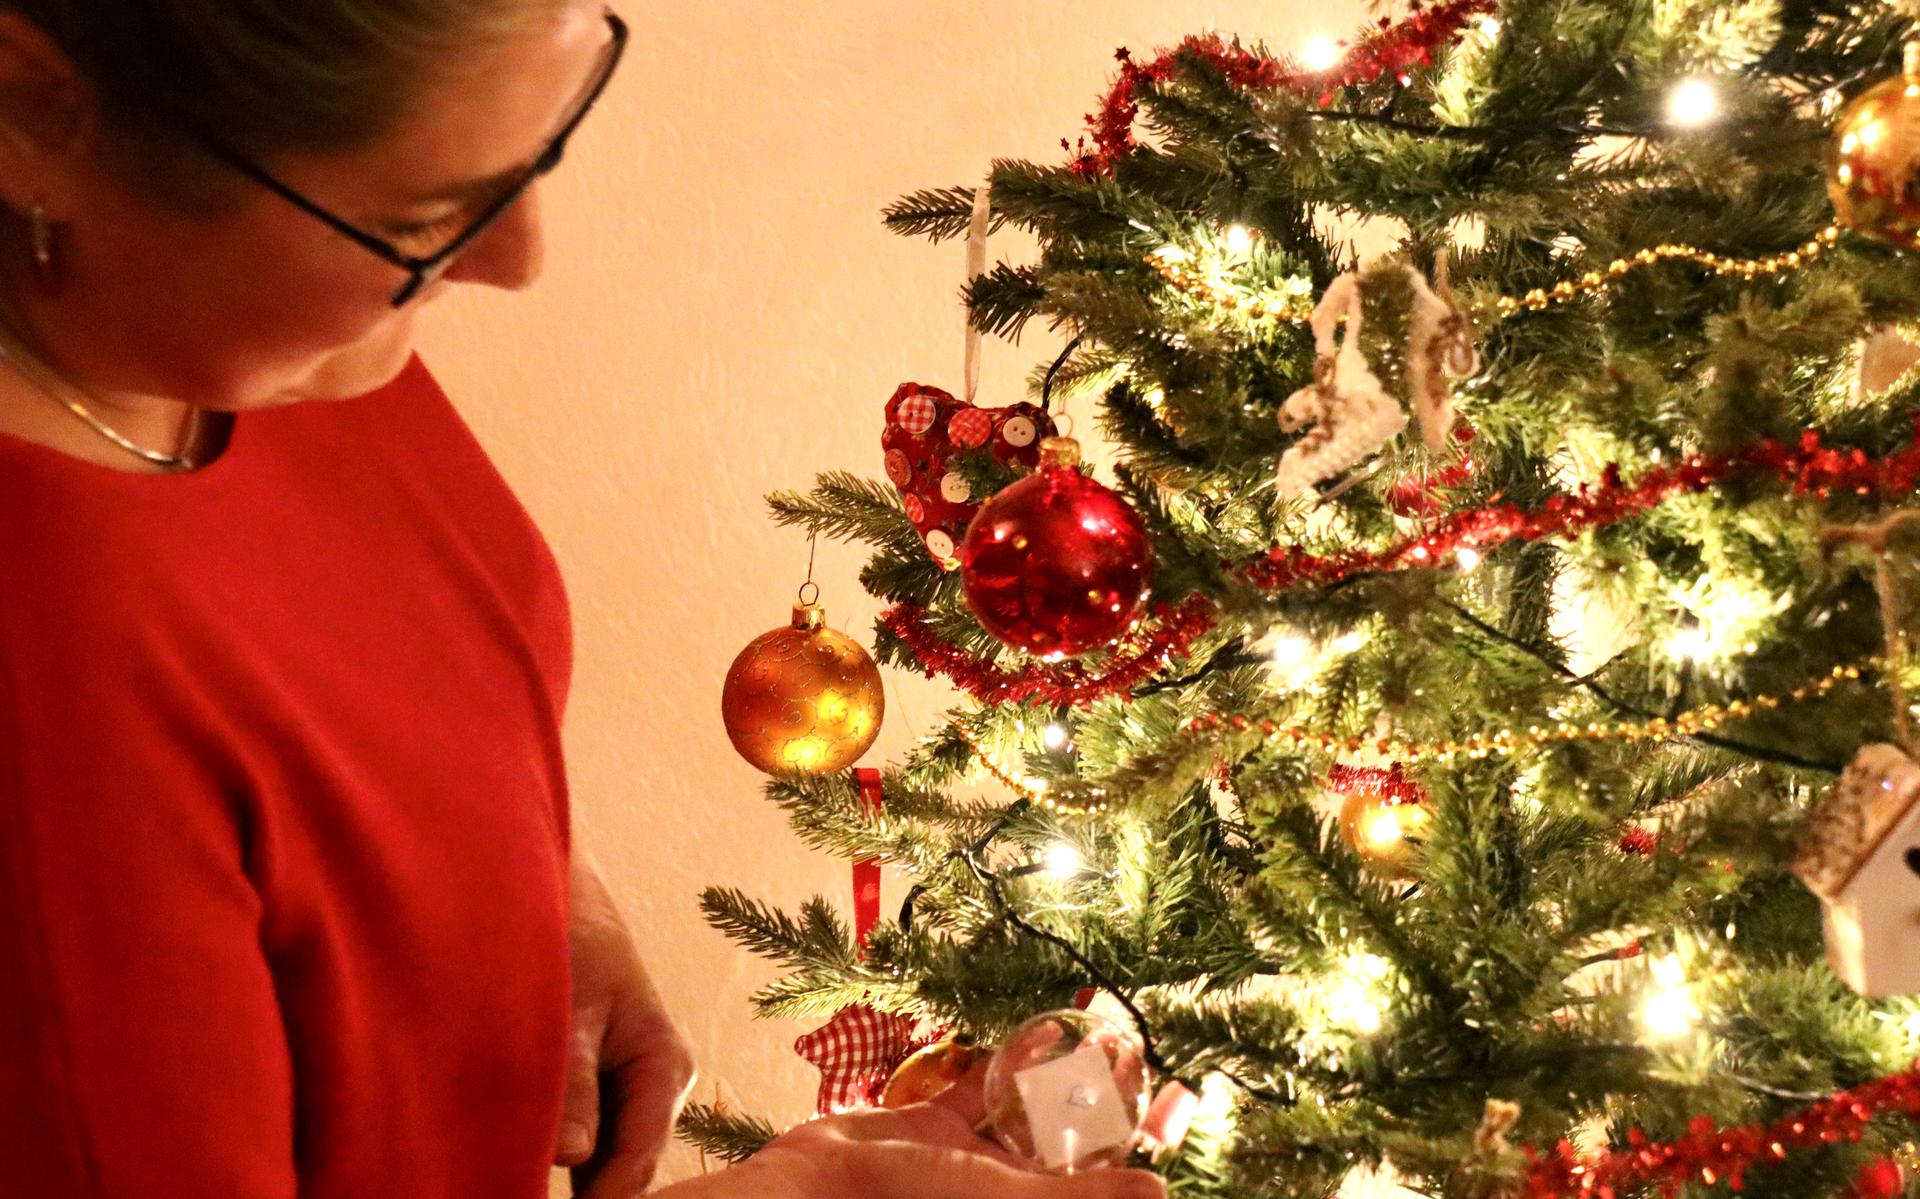 Aafke hangt alvast haar wens in de kerstboom. © Eigen foto